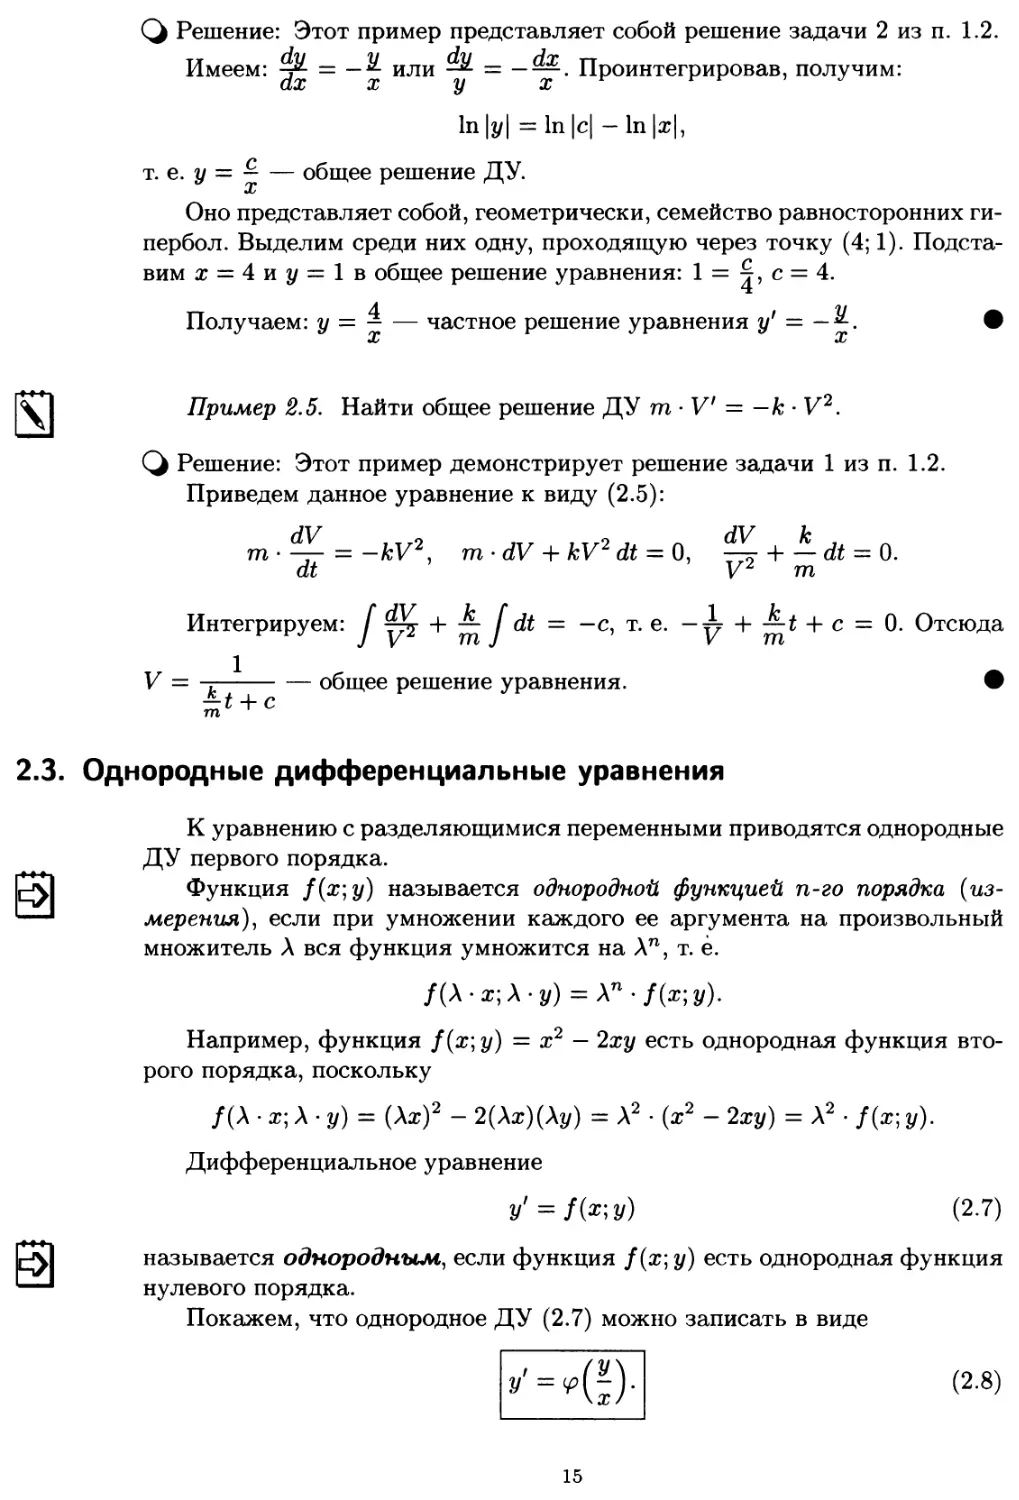 2.3. Однородные дифференциальные уравнения